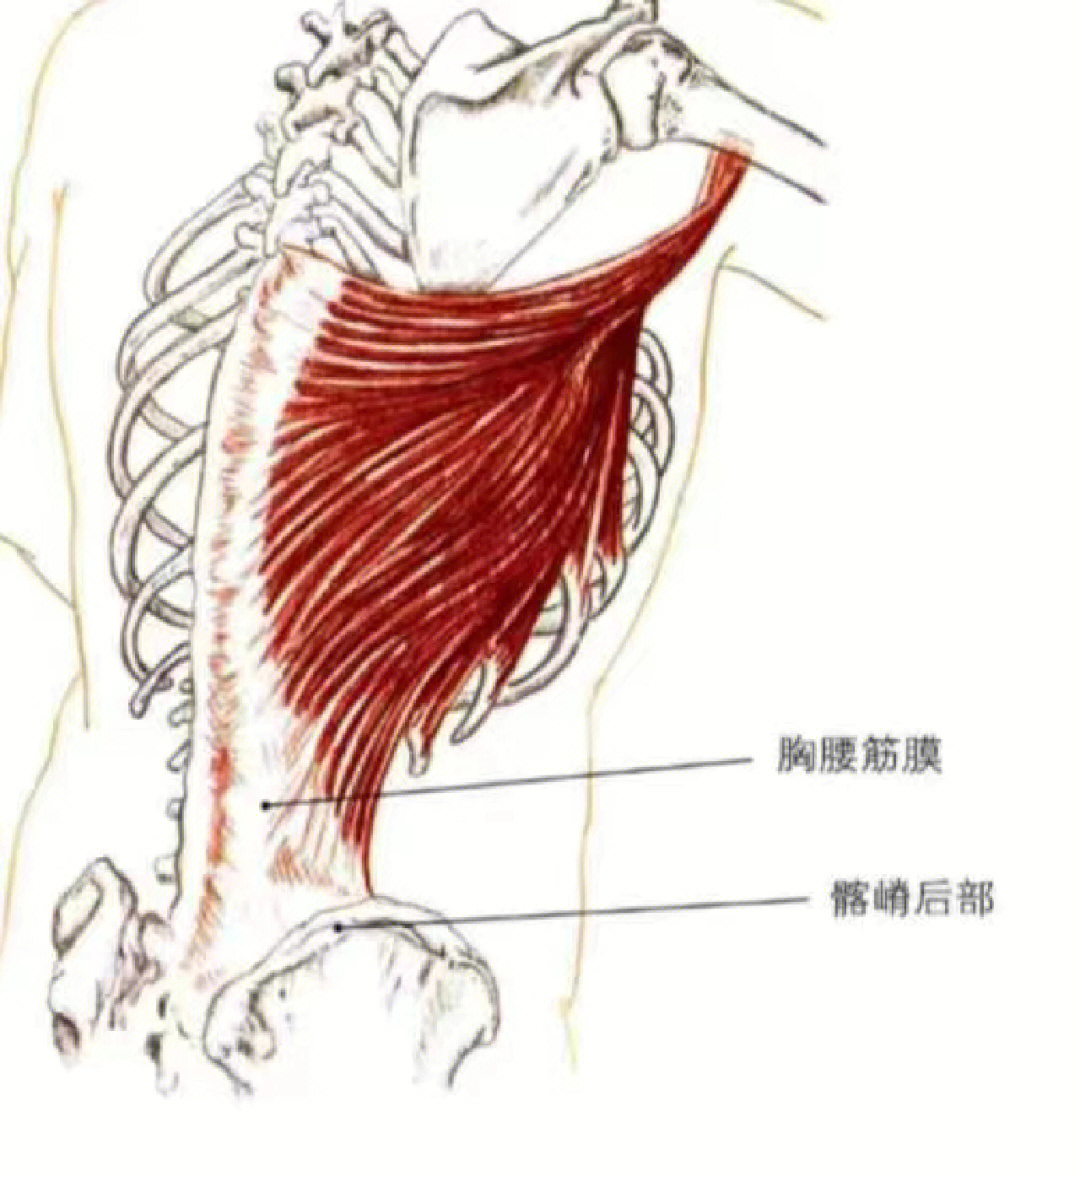 大圆肌与背阔肌背阔肌起点为胸腰筋膜,髂骨后嵴,9